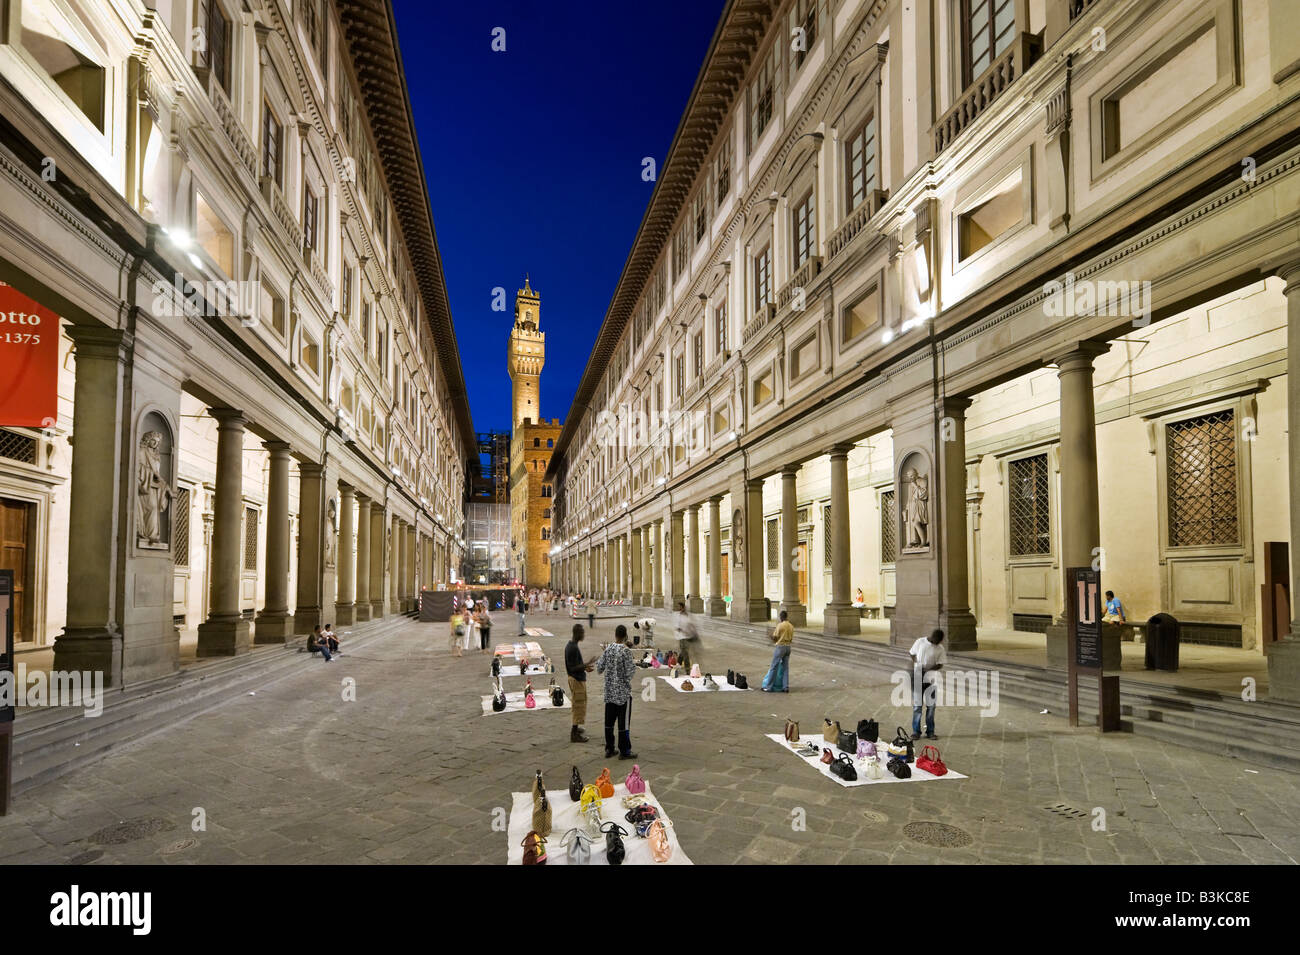 Illegali i venditori di strada al di fuori della Galleria degli Uffizi di notte con il Palazzo Vecchio a distanza, Firenze, Toscana, Italia Foto Stock